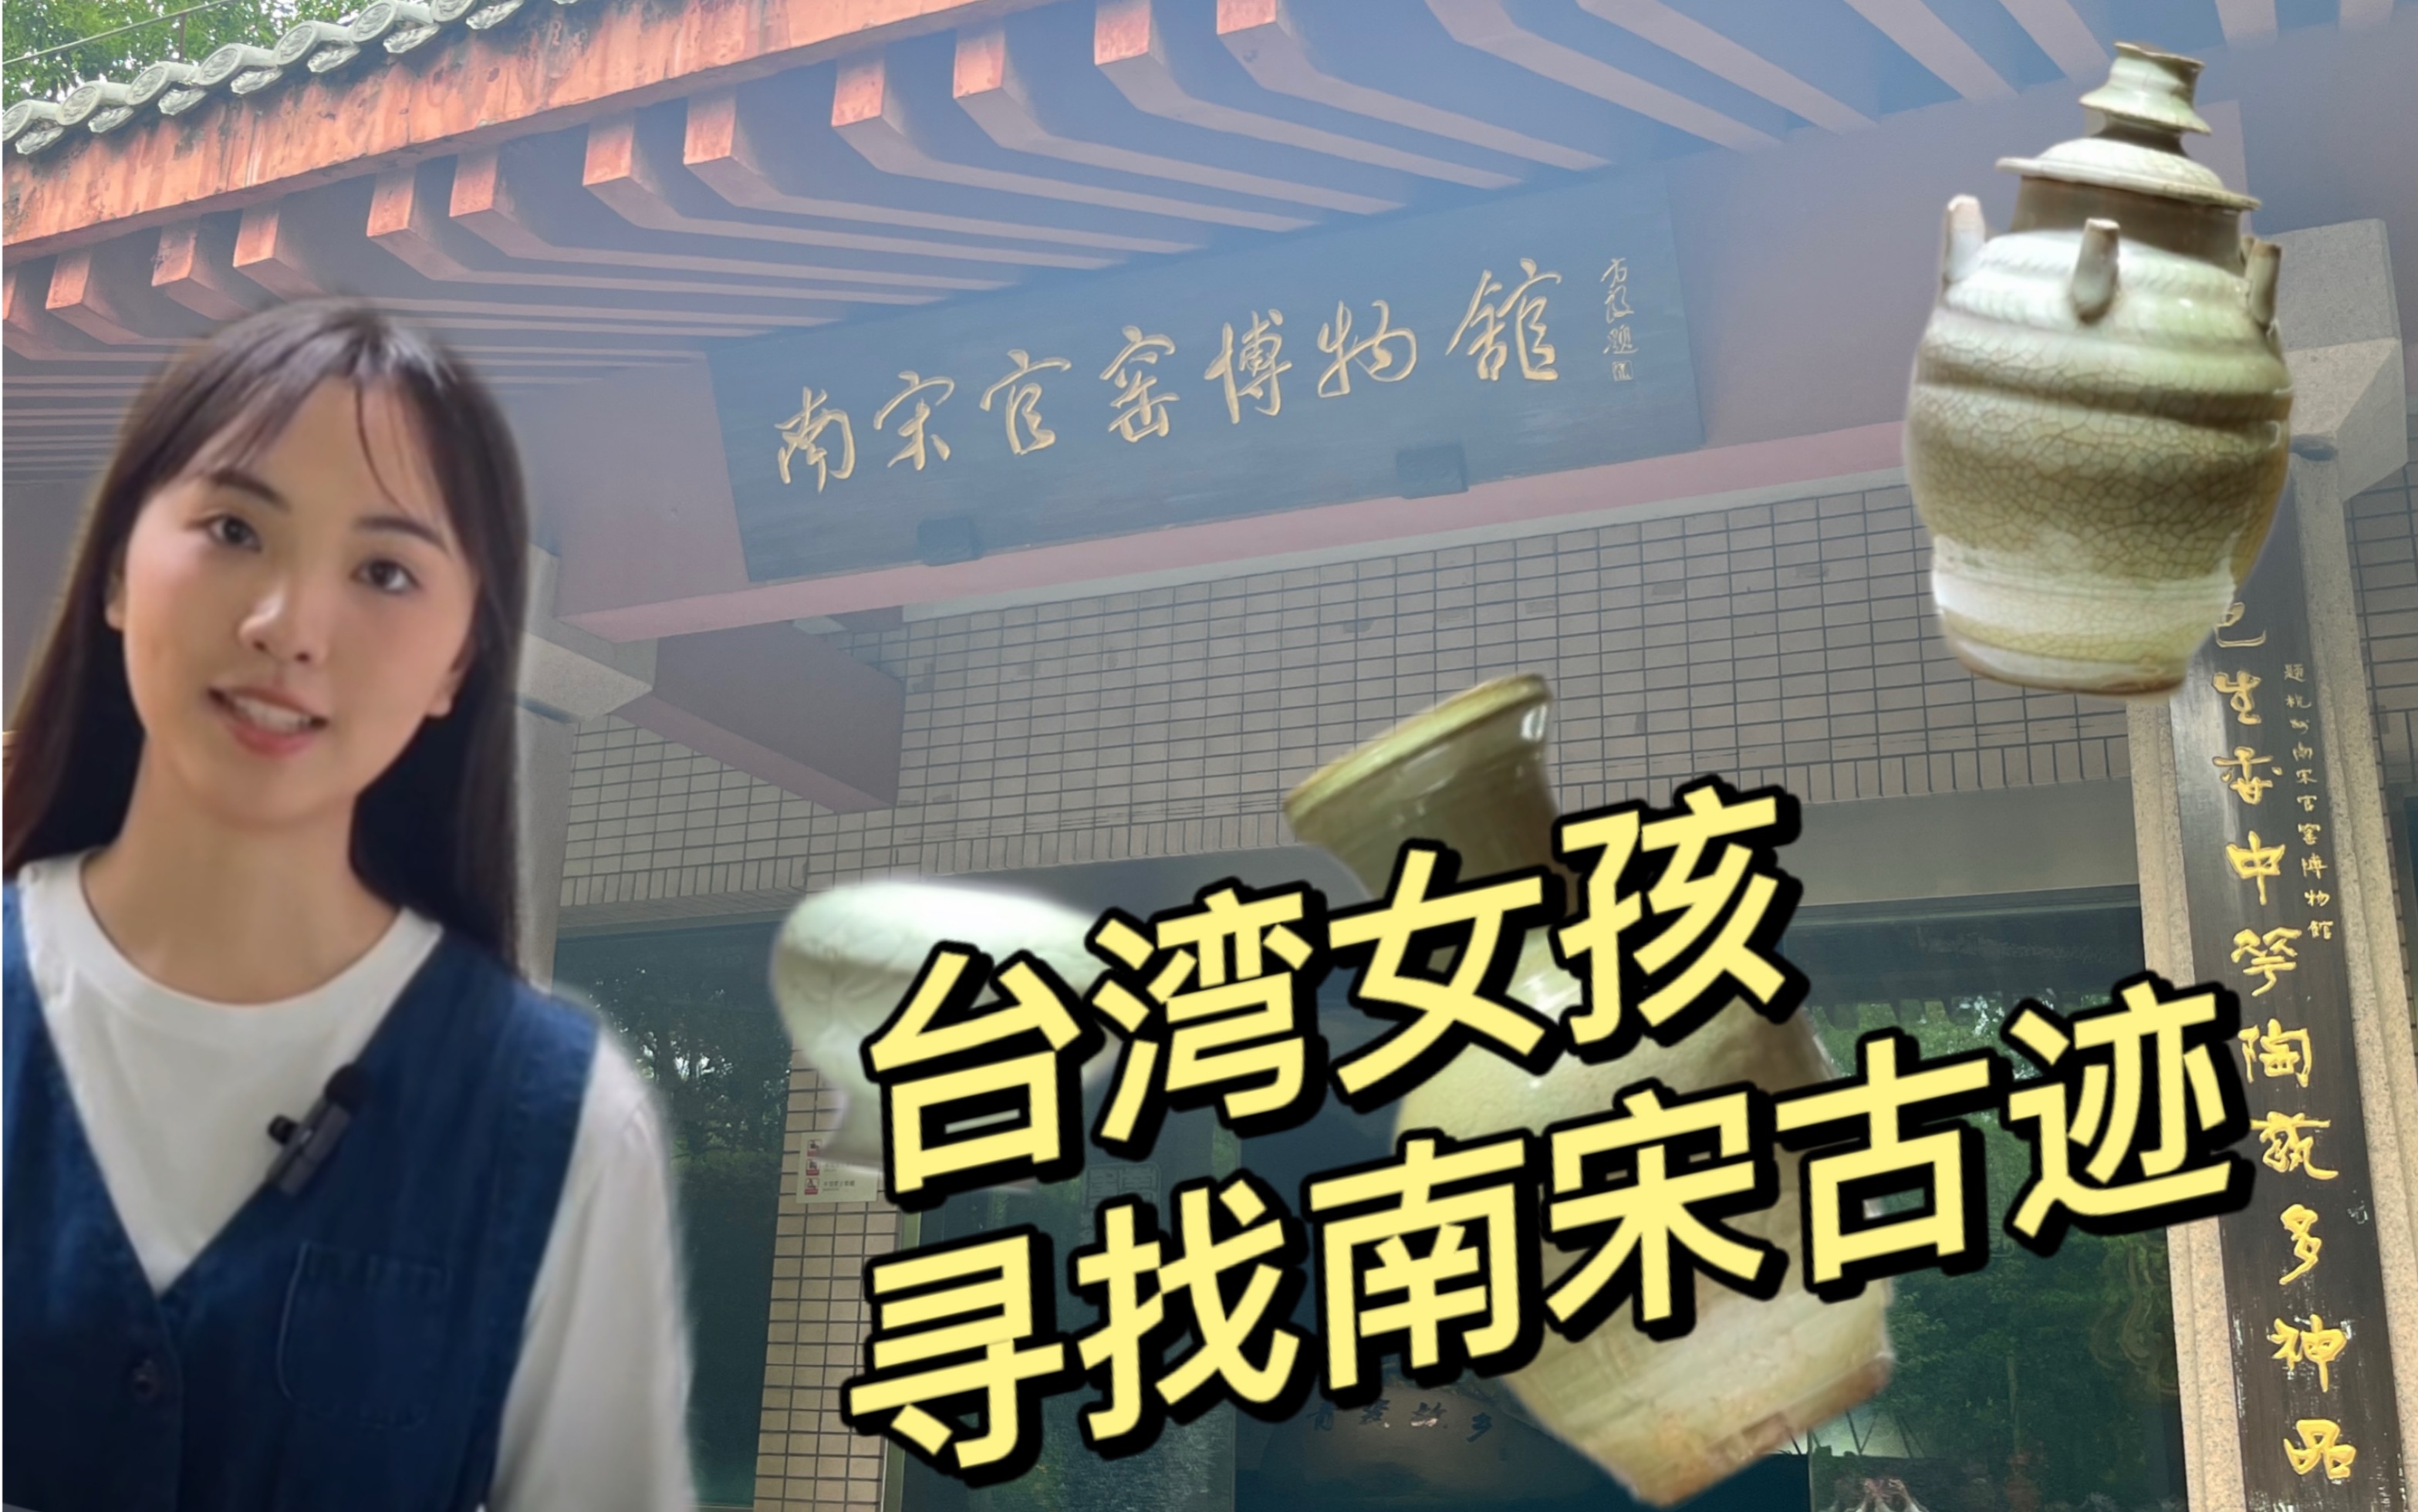 台湾女孩寻找南宋遗迹 古人的手艺也太好了吧